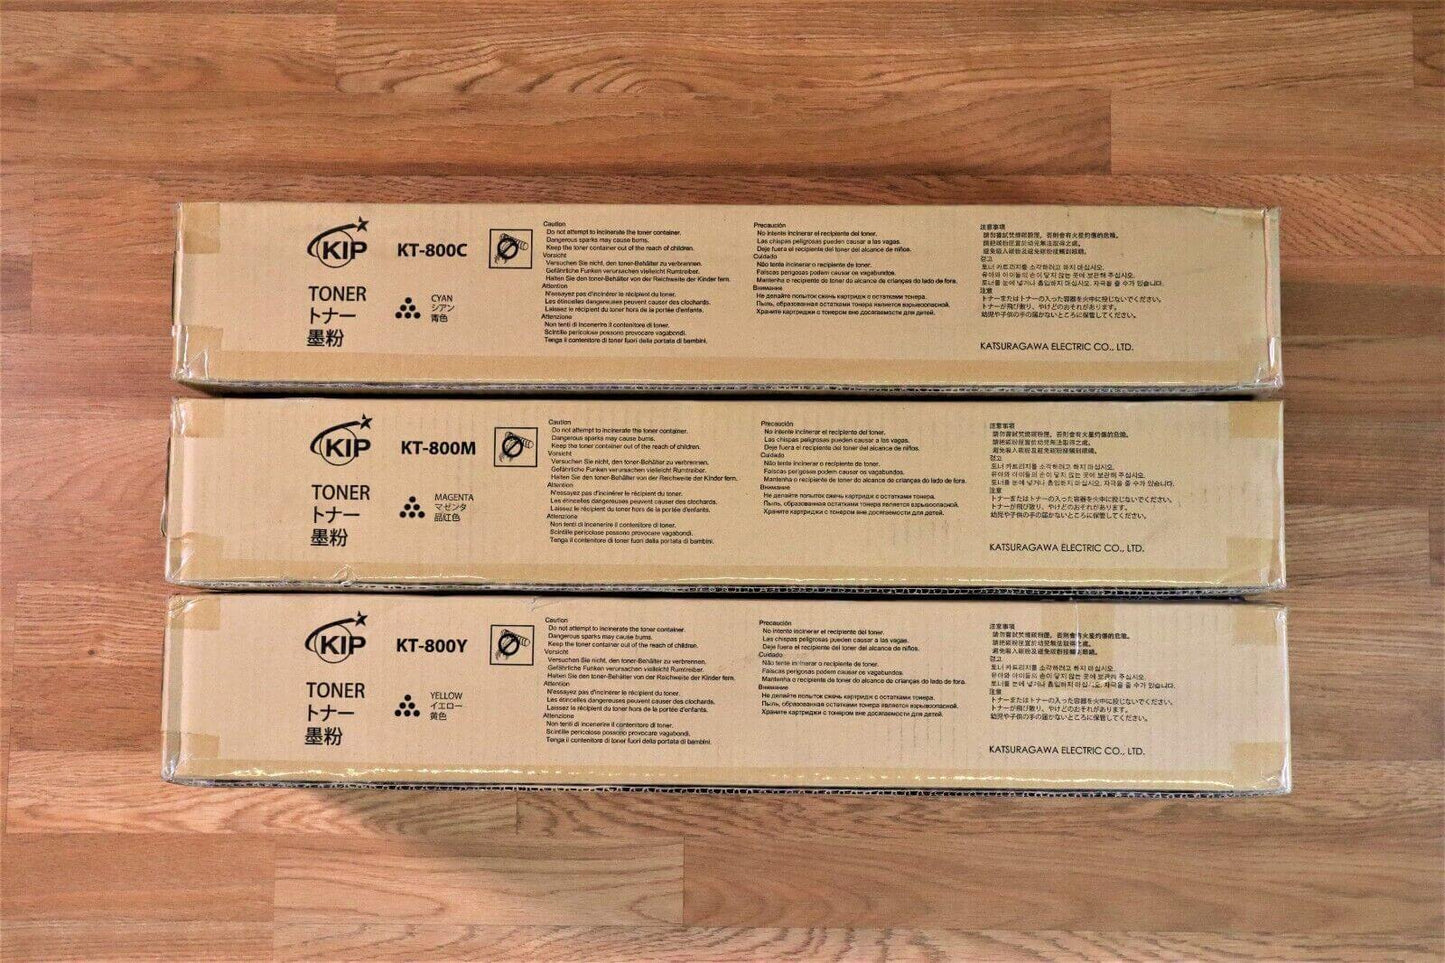 Genuine KIP KT-800 CMY Toner Z350970020N,30N,40N For 850, 860, 870, 880, 890 - copier-clearance-center